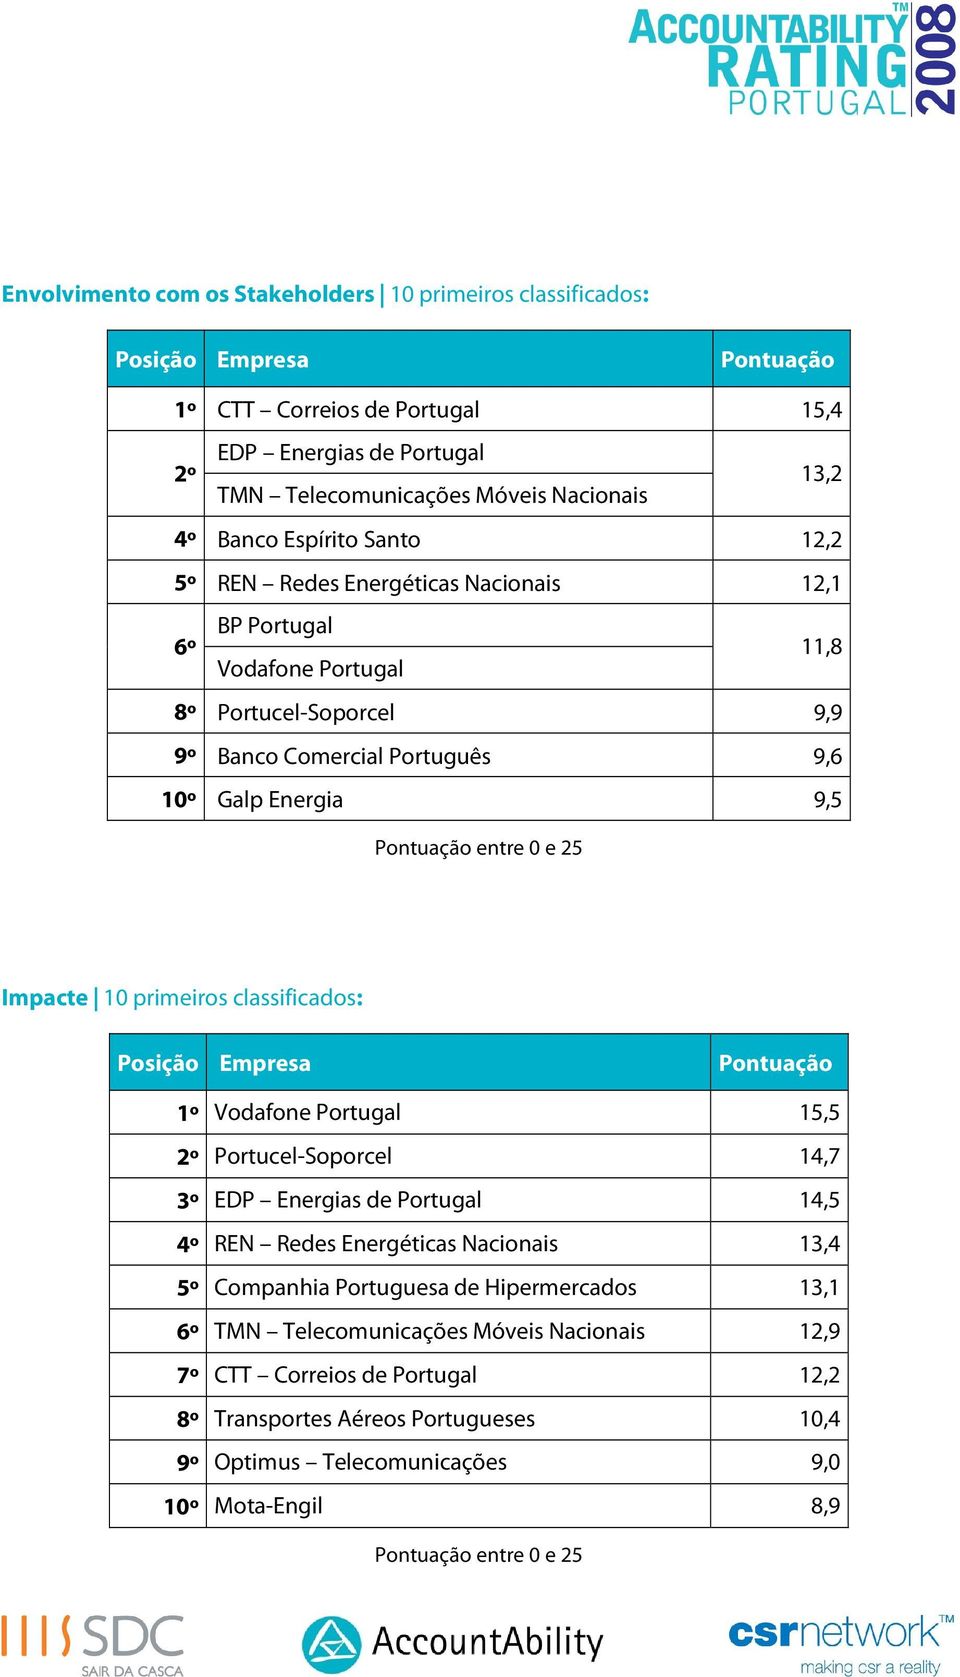 Impacte 10 primeiros classificados: Posição Empresa Pontuação 1º Vodafone Portugal 15,5 2º Portucel-Soporcel 14,7 3º EDP Energias de Portugal 14,5 4º REN Redes Energéticas Nacionais 13,4 5º Companhia